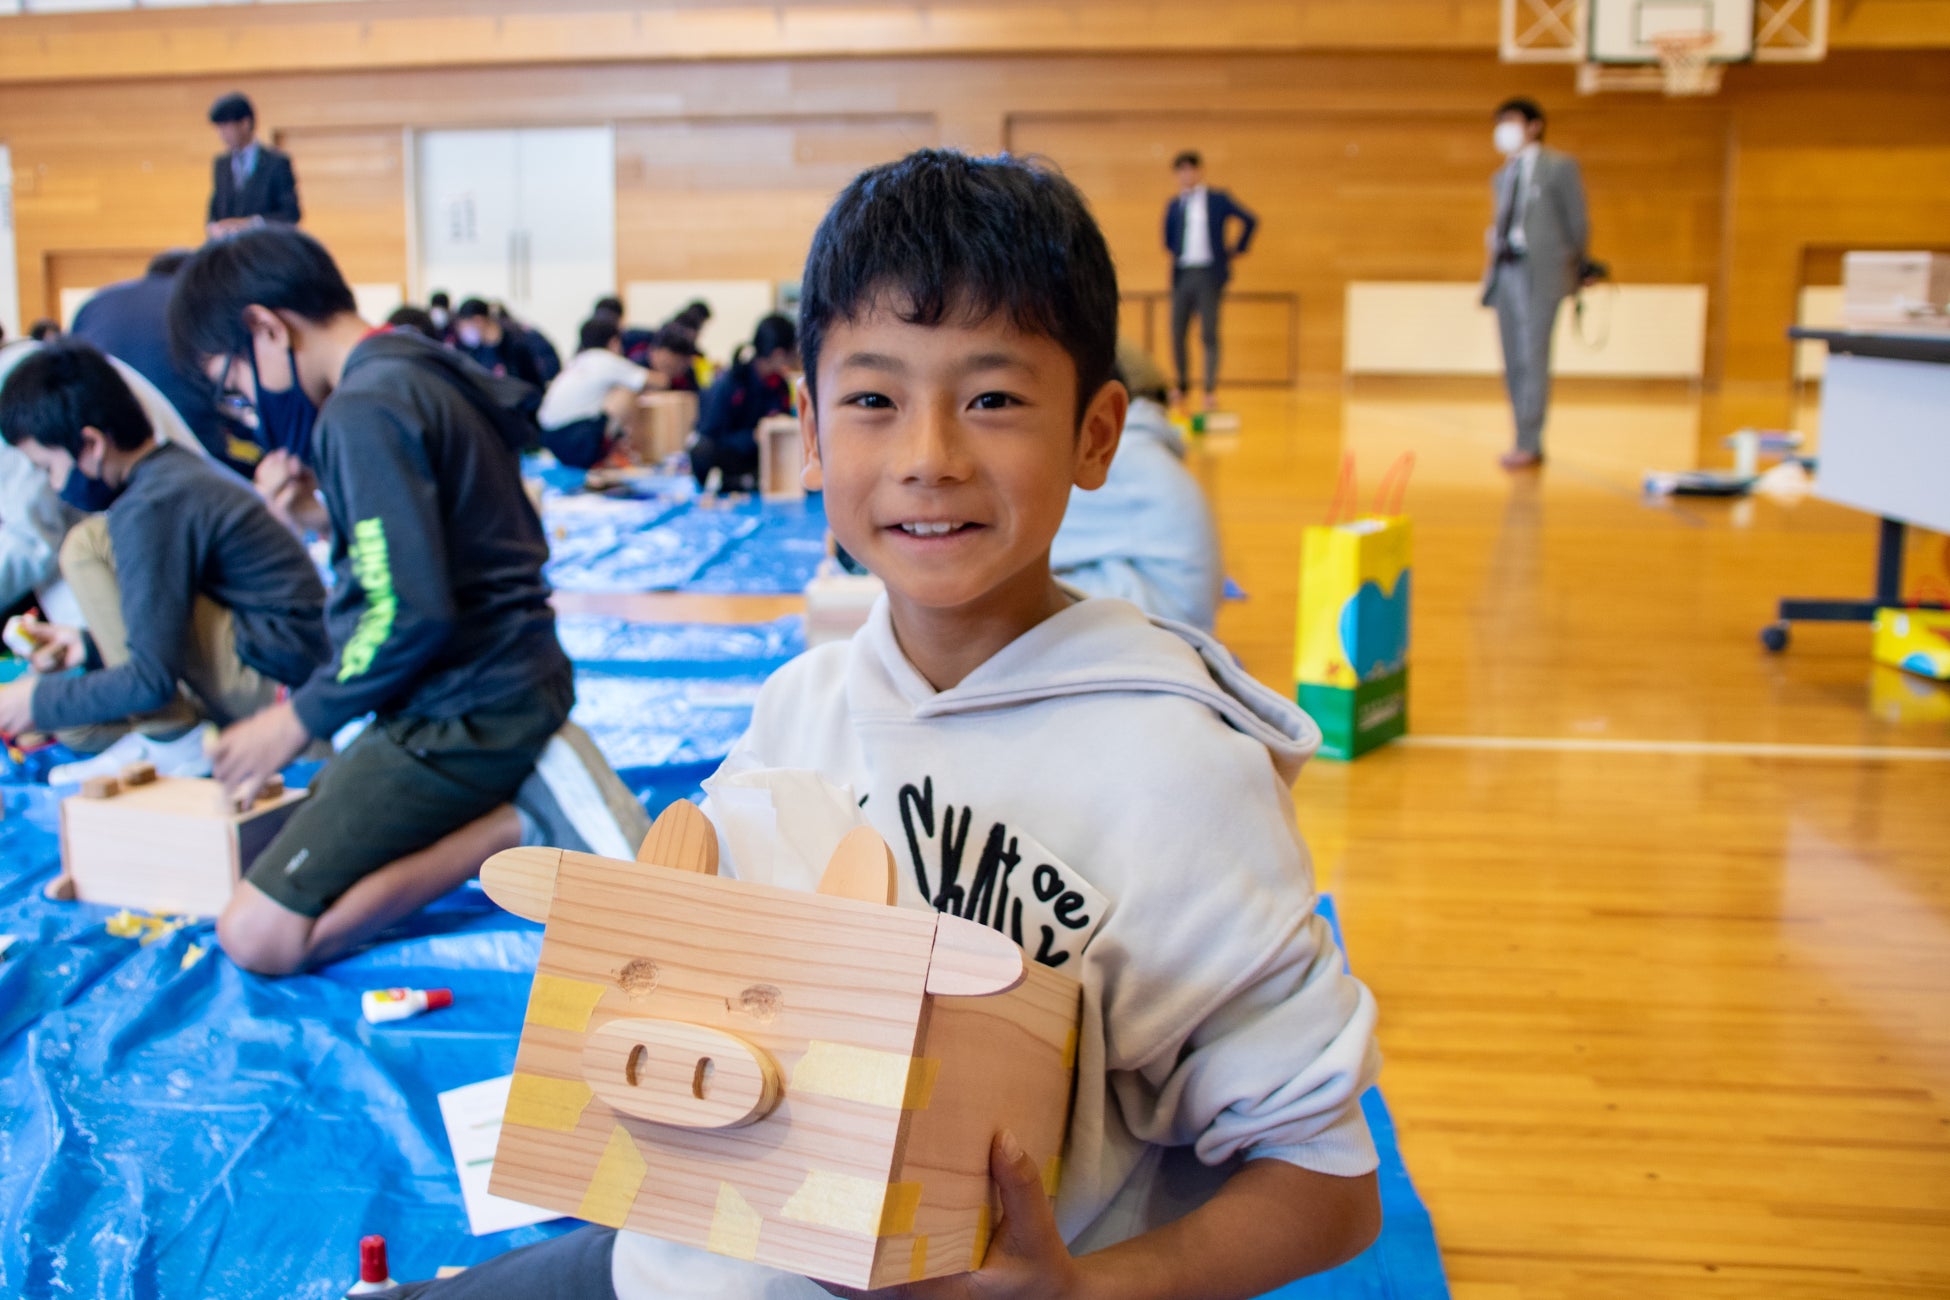 【一建設株式会社】「盛岡市立向中野小学校」の5年生を対象に出前授業を開催のサブ画像1_2部「木造キットの組み立て」の様子